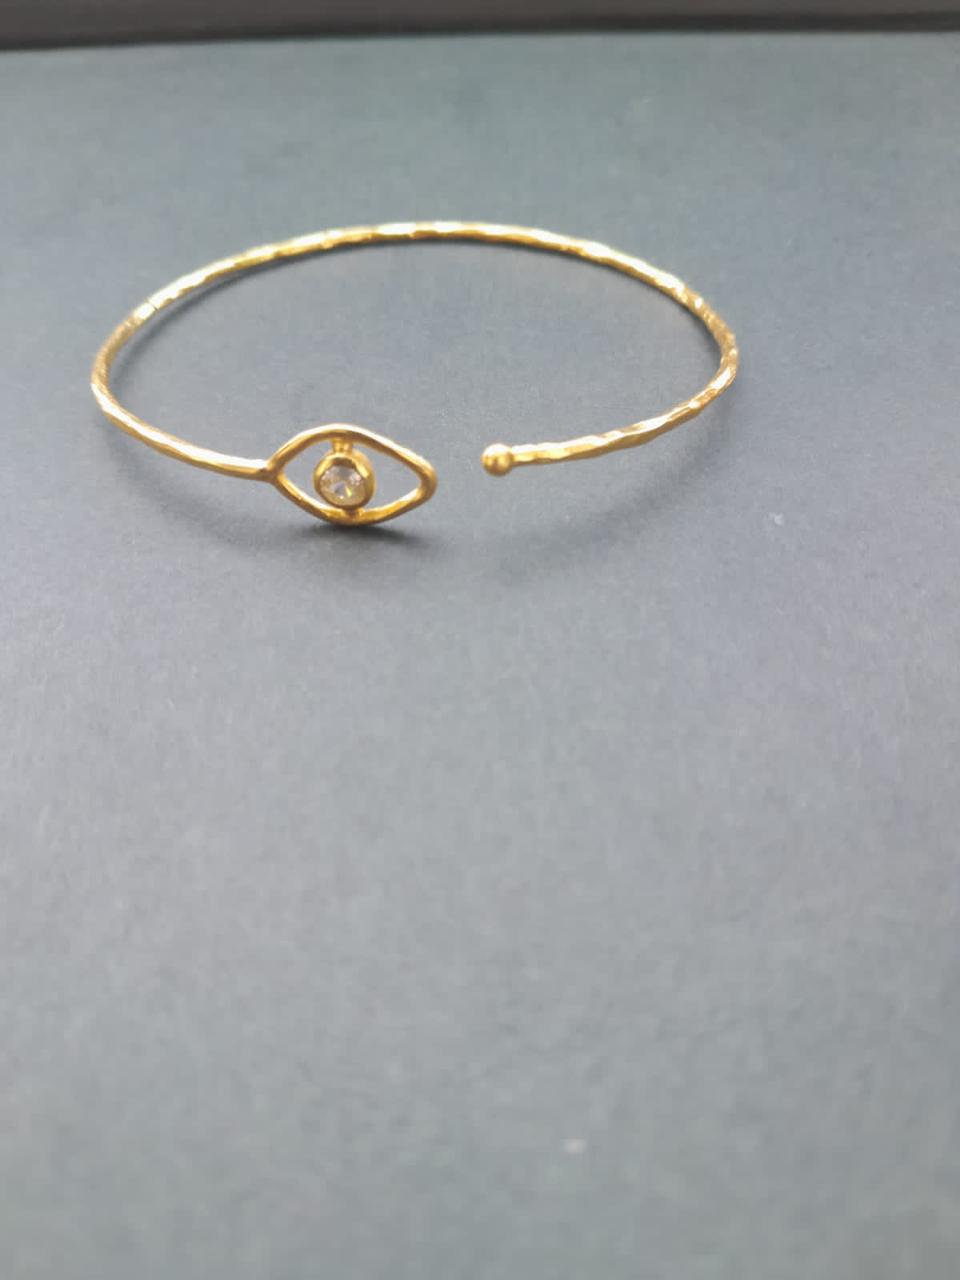 Evil Eye Sterling silver adjustable bracelet with 24 karat gold plating and Crystal.